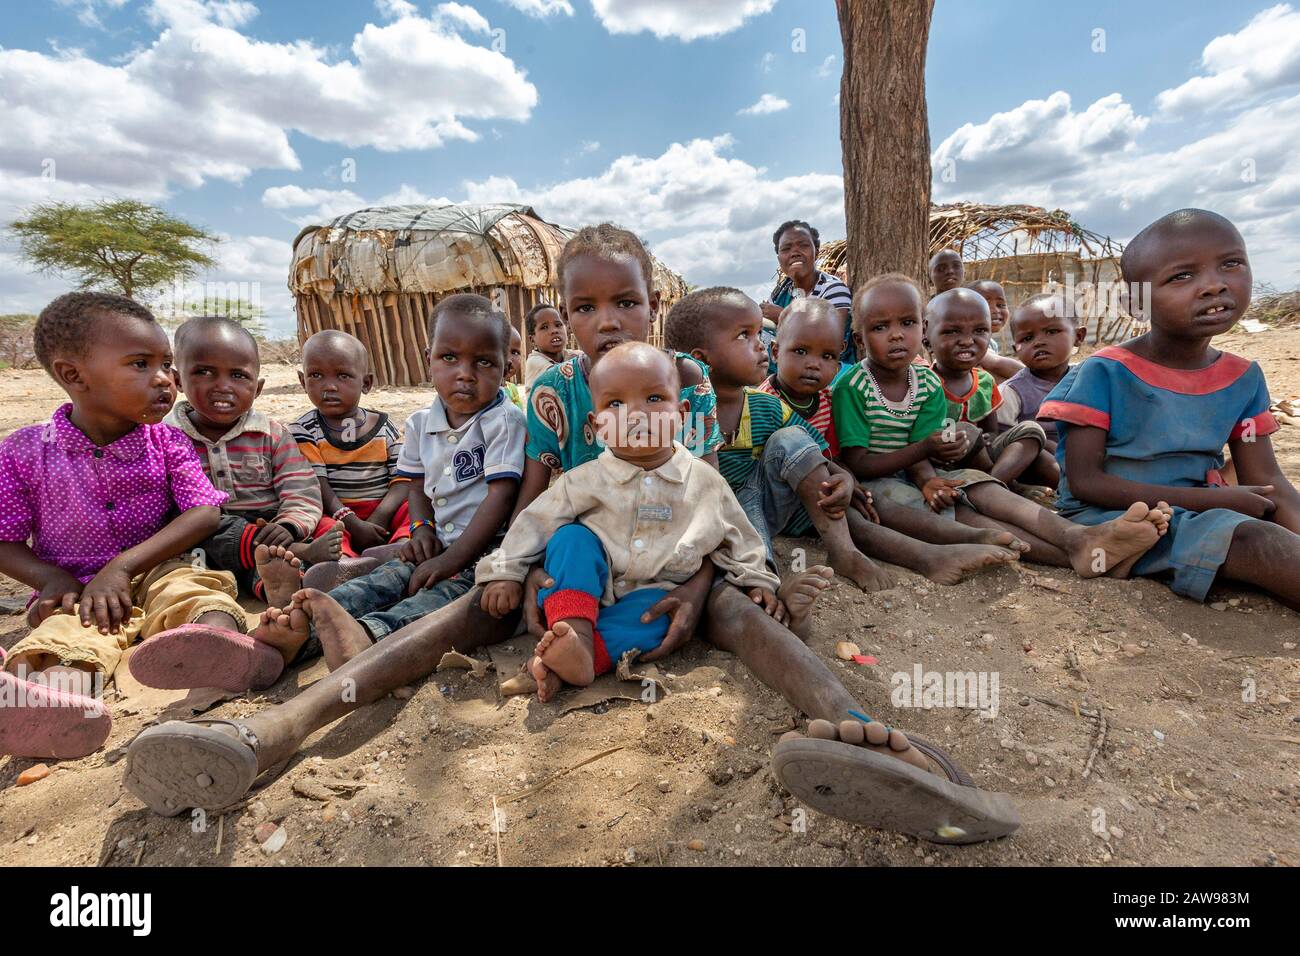 Village children with their teacher, in Samburu, Kenya Stock Photo